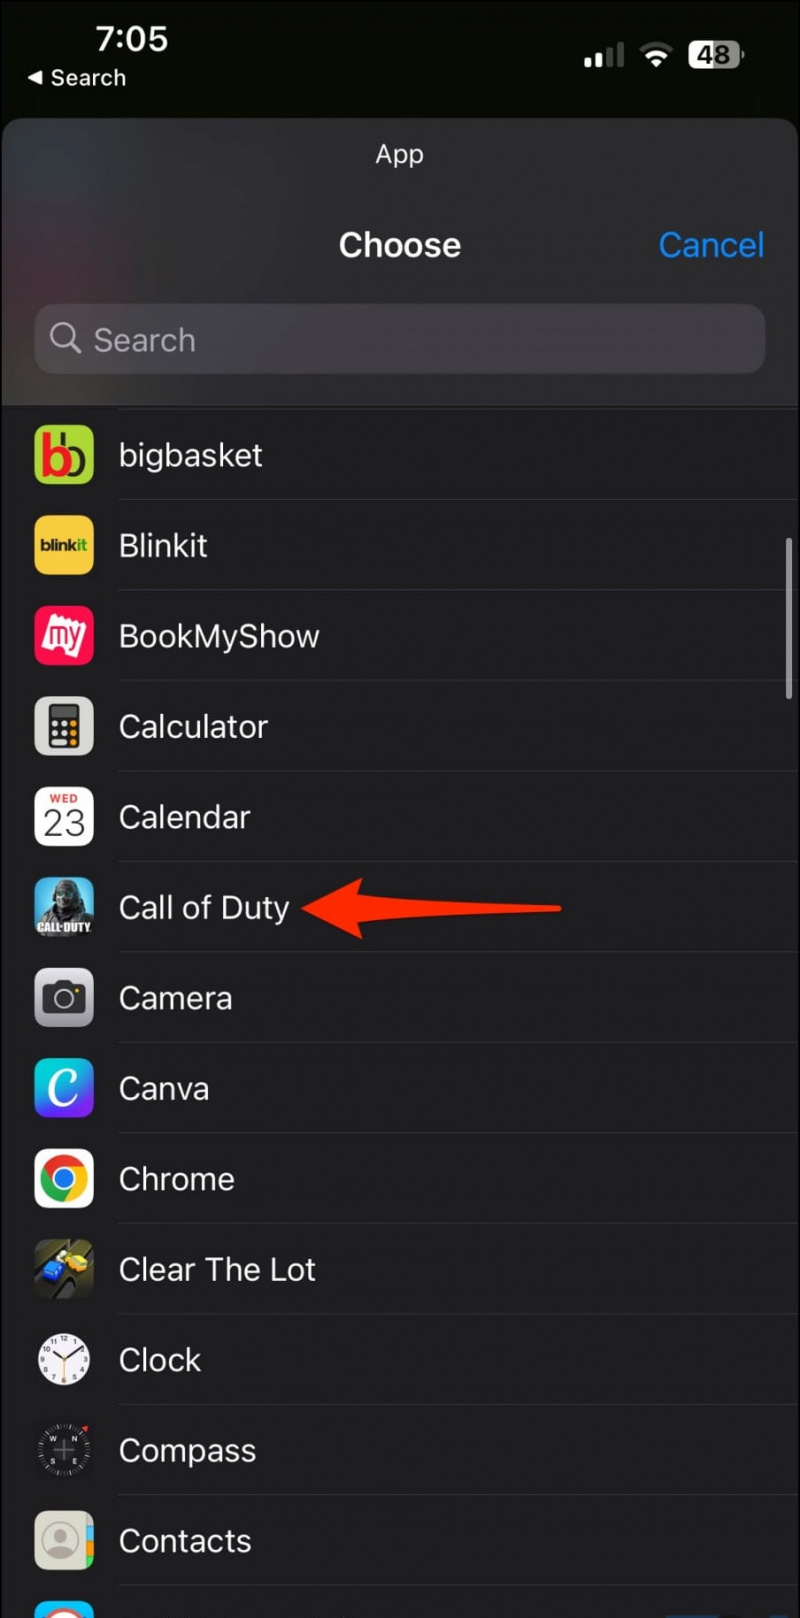   Travesti l'icona dell'app per iPhone da nascondere